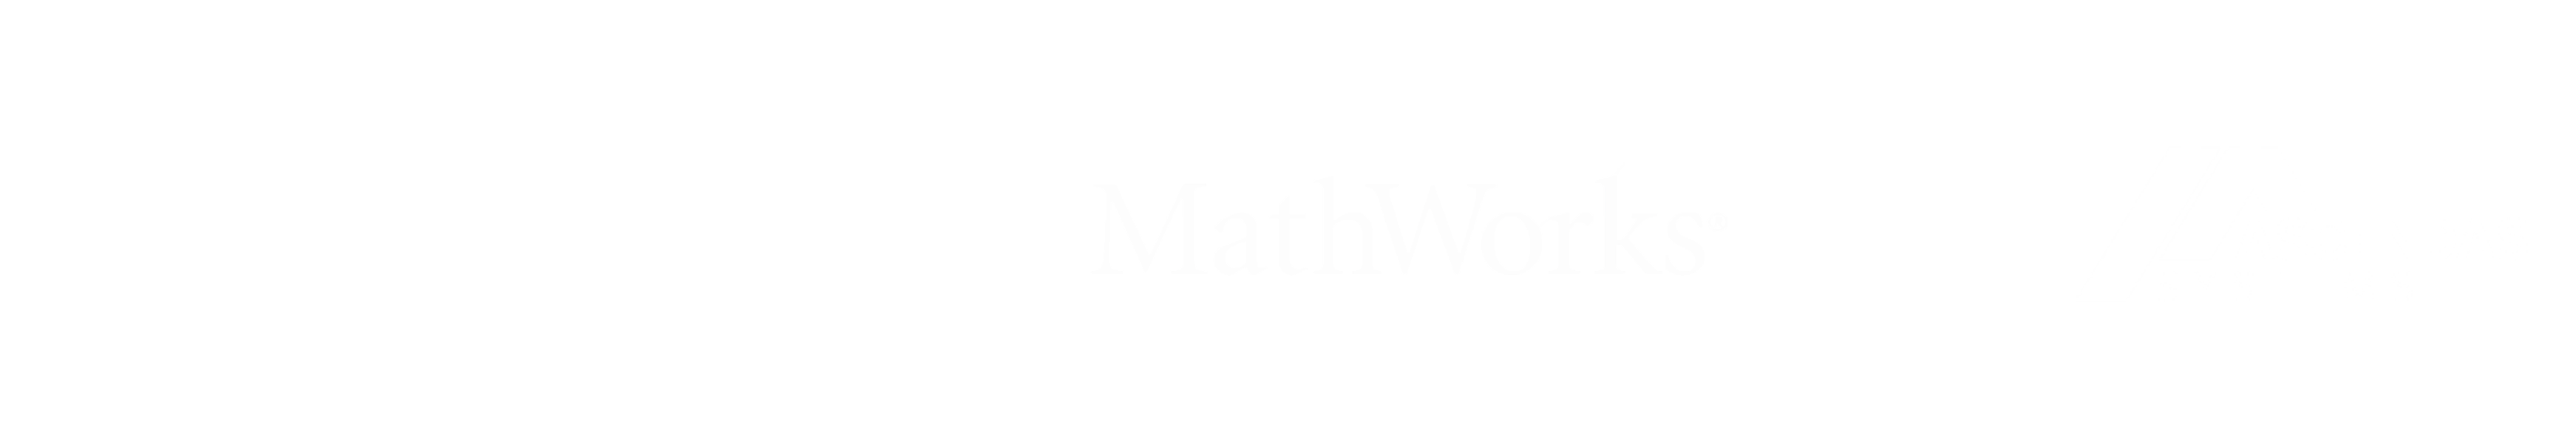 TechSource + MathWorks + Ascendas_White logos